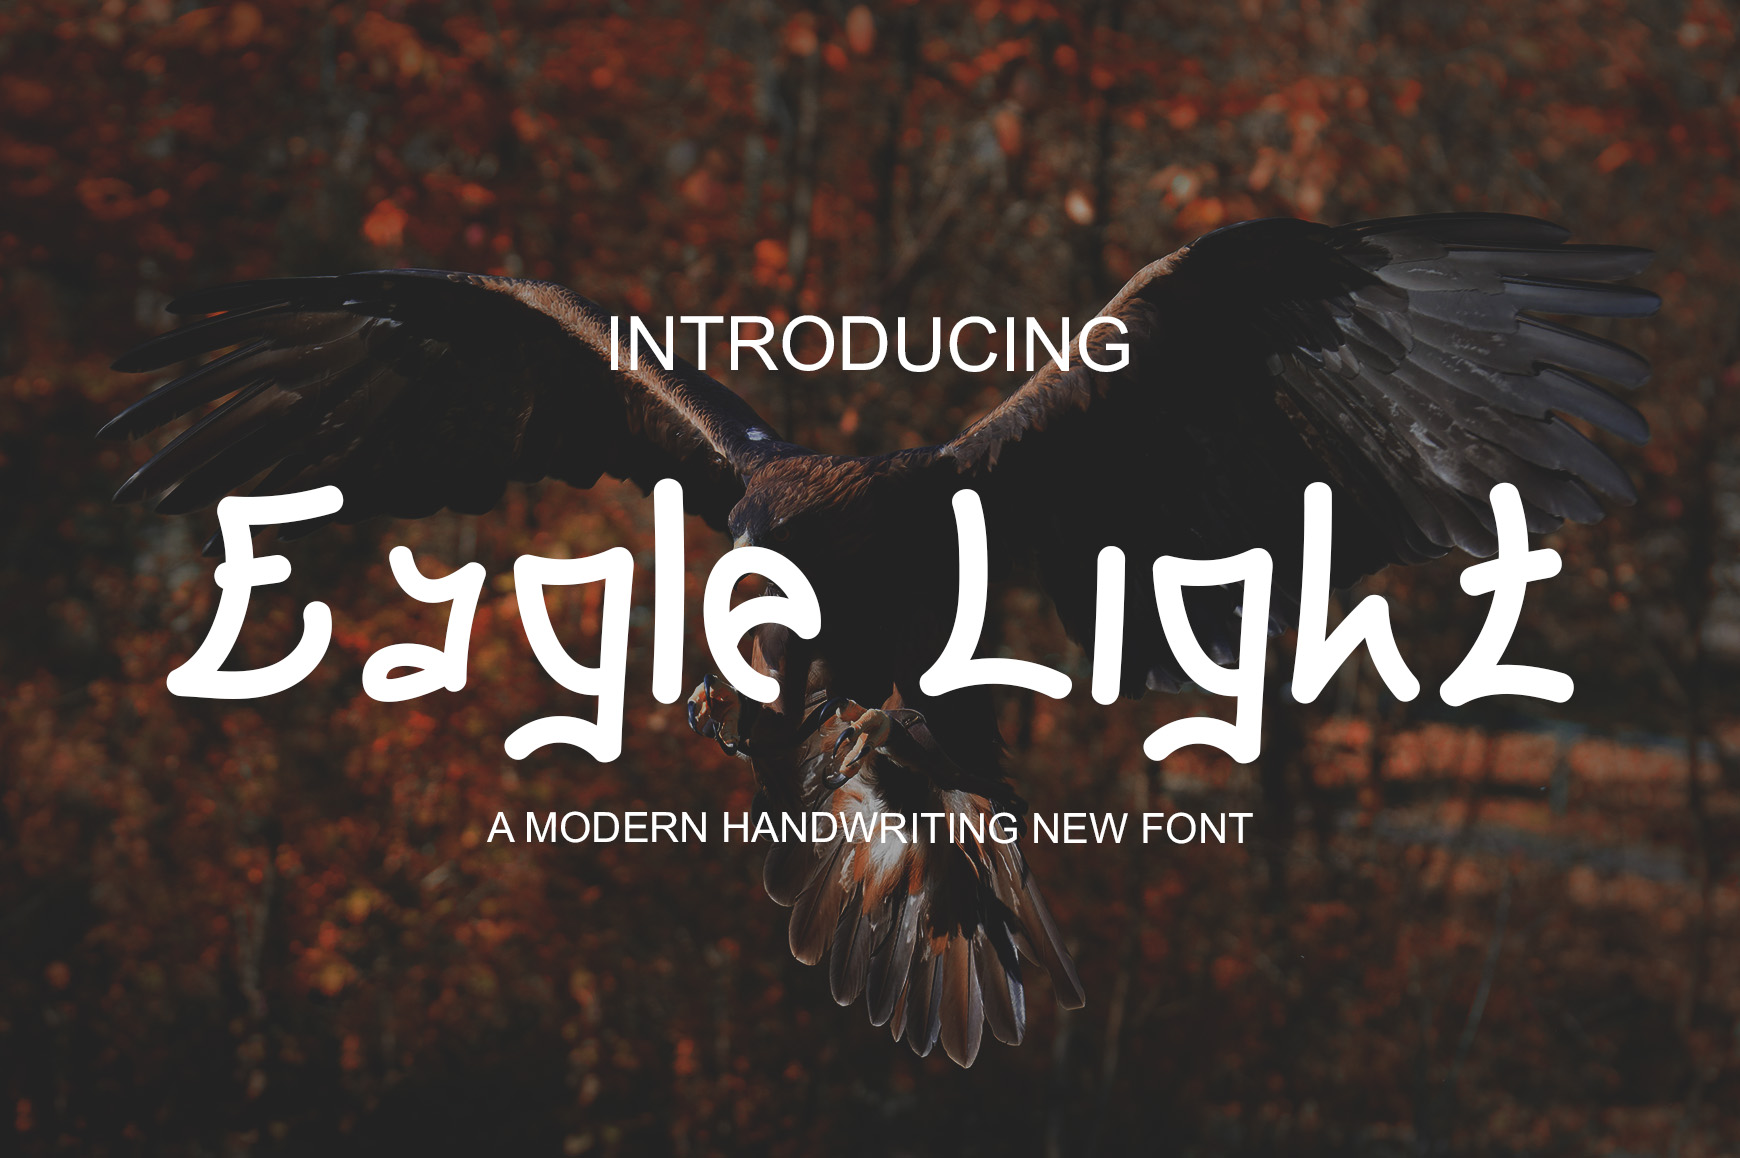 Eagle Light